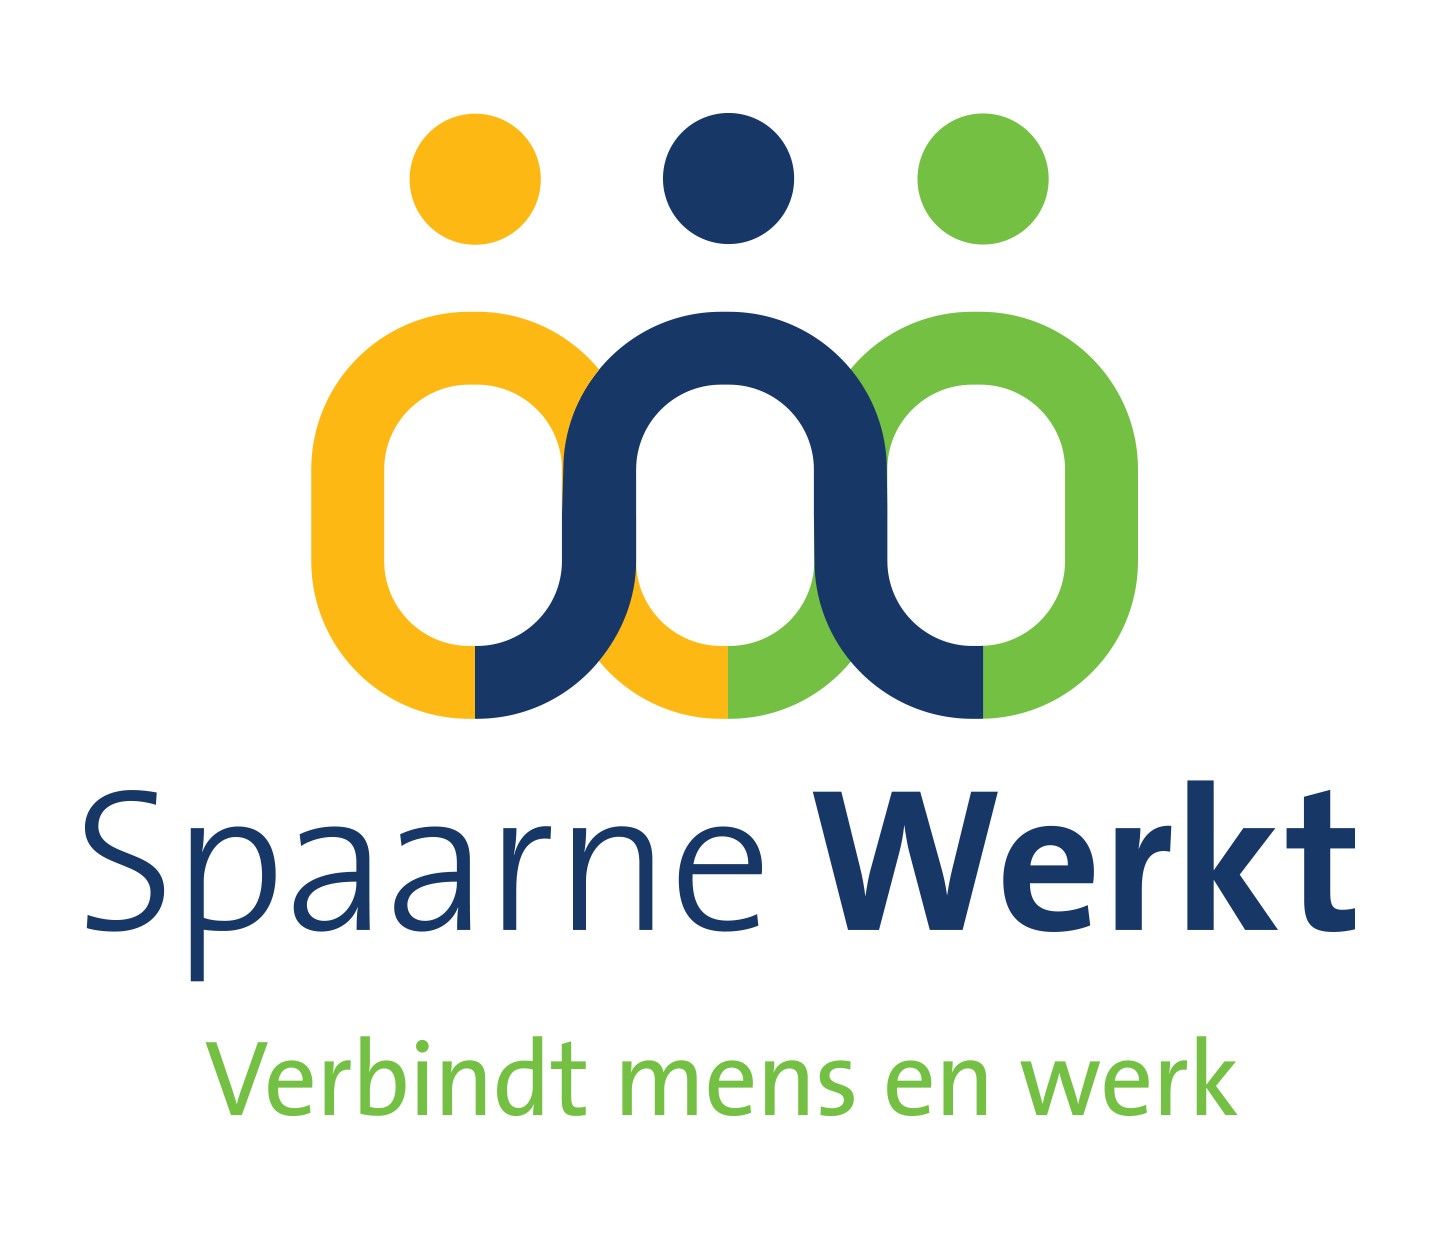 Logo Spaarne Werkt met payoff def29 11 21